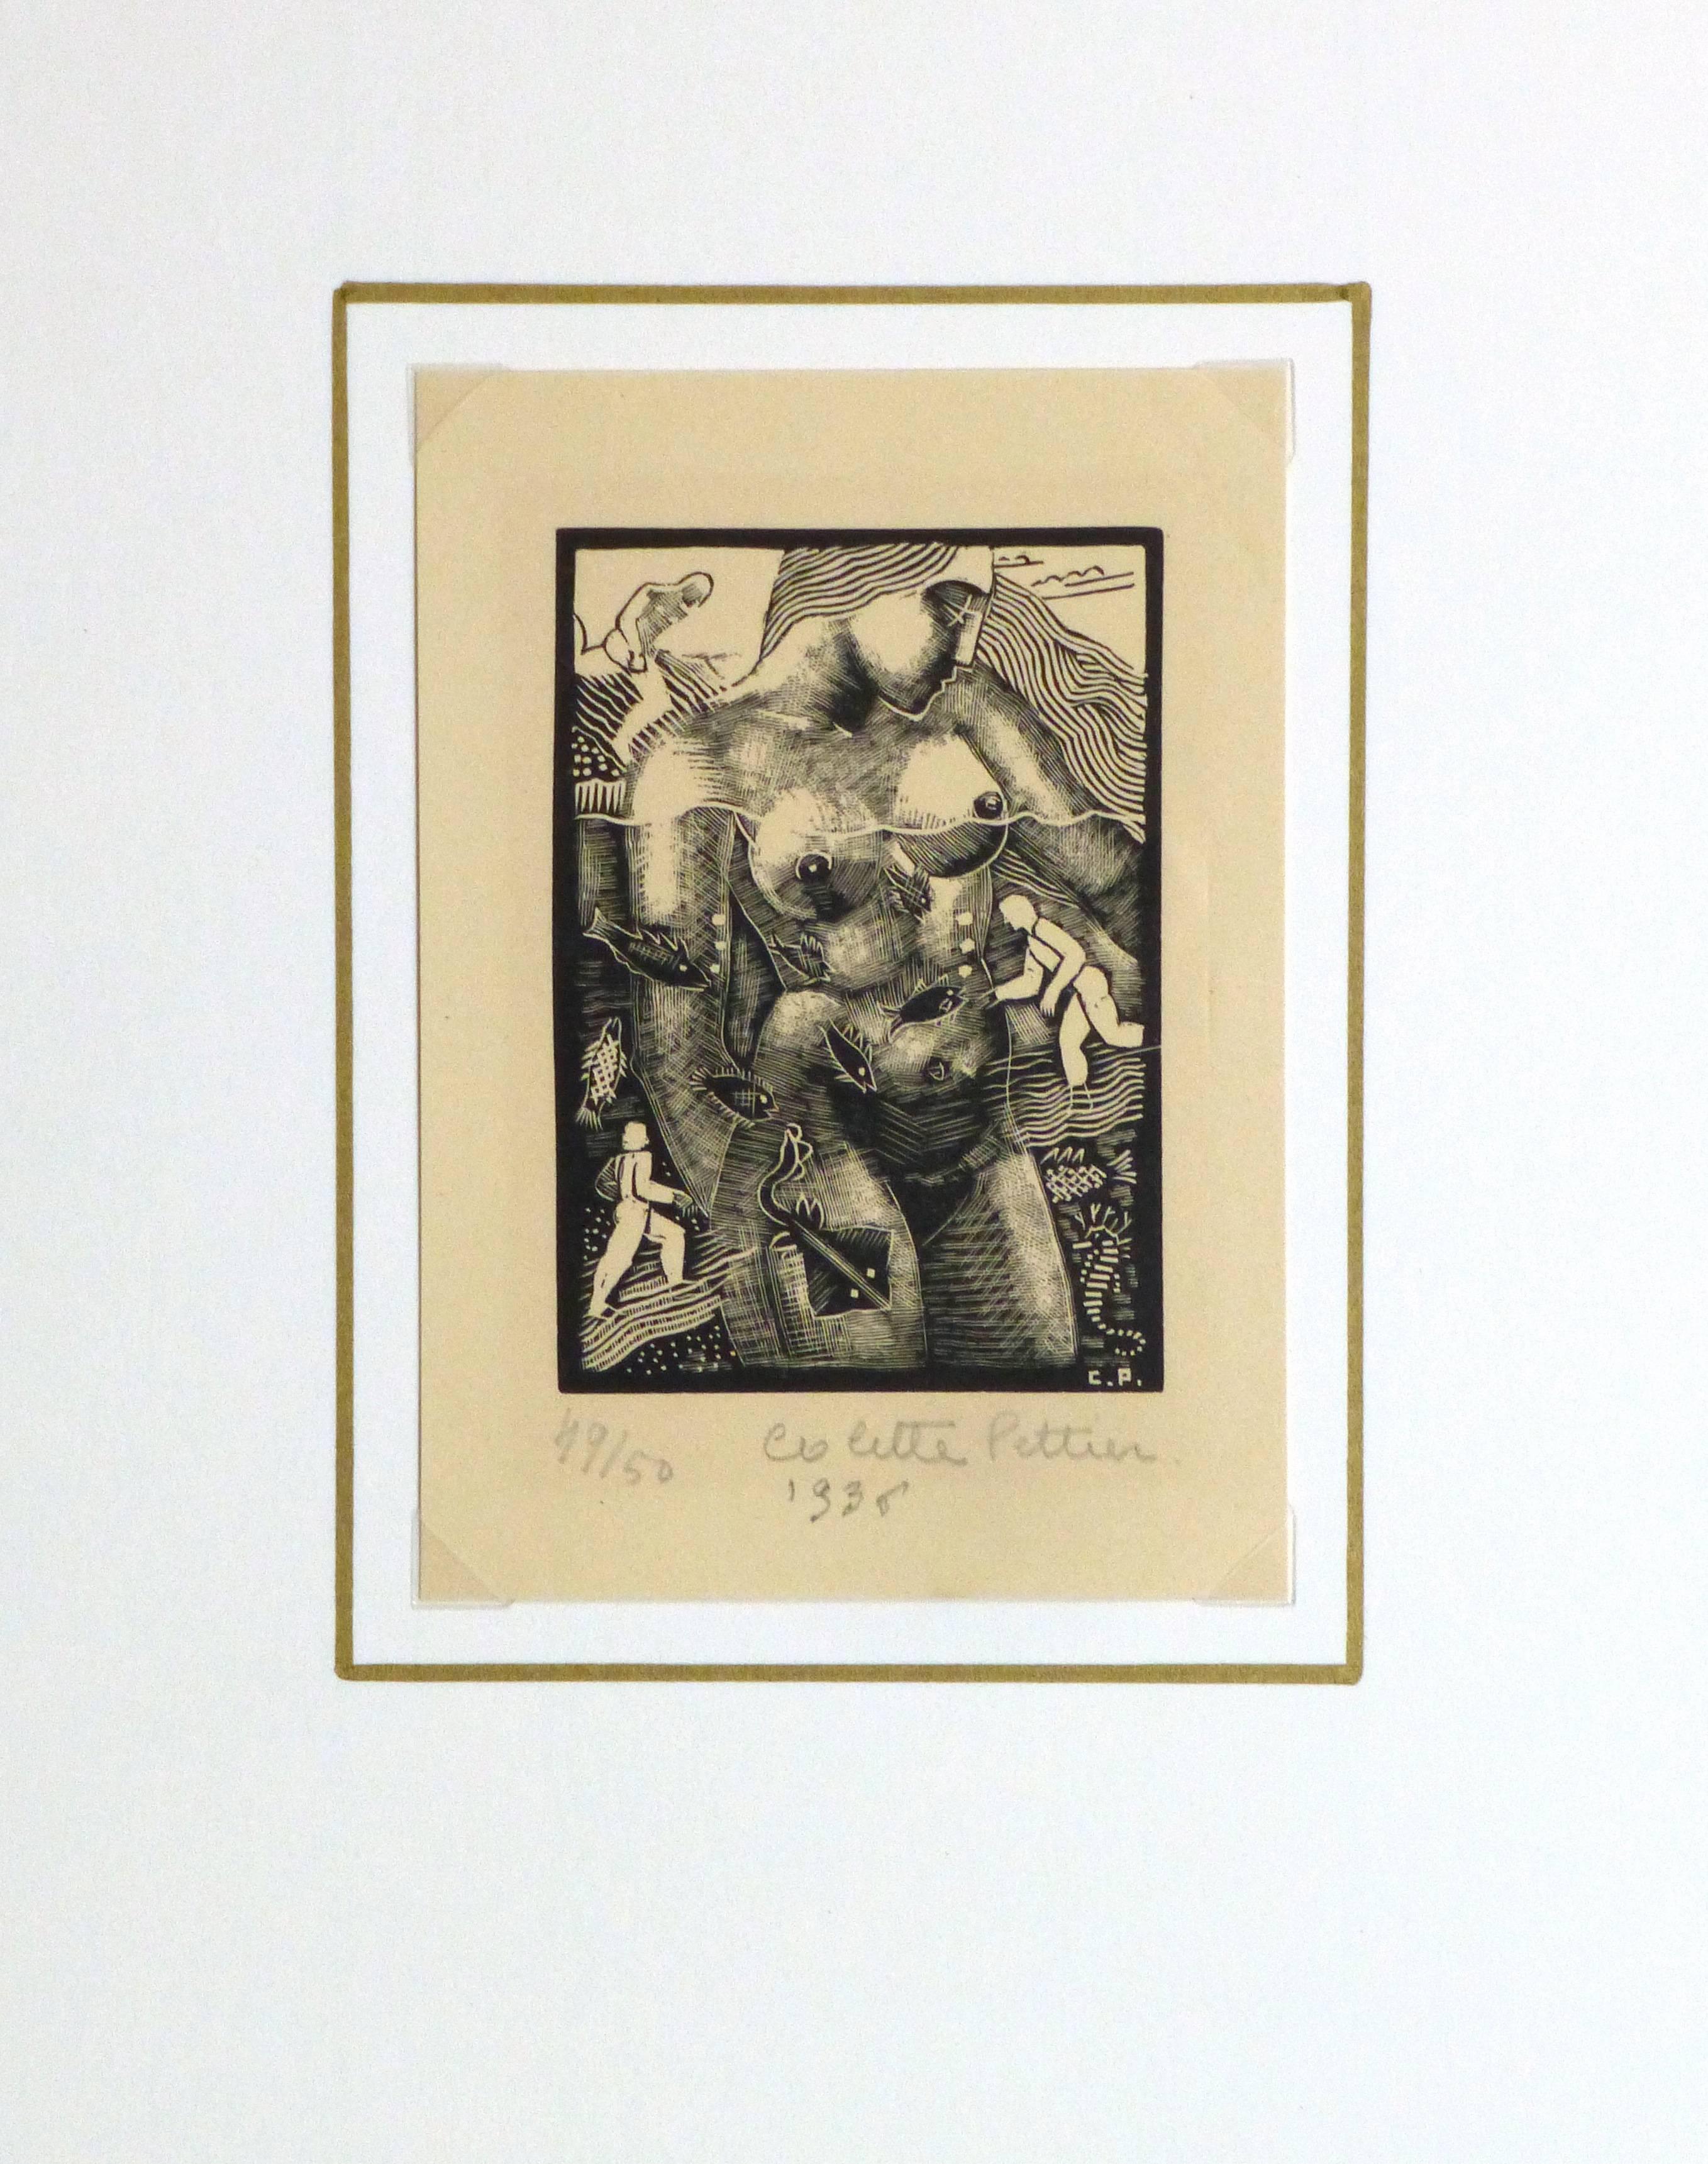 Absorbante gravure sur bois en noir et blanc d'une figure féminine nue dans l'eau, entourée de vie marine et de petits personnages, par l'artiste française Colette Pettier, 1936. Signé, daté et numéroté 49 sur 50 dans la marge inférieure.

Œuvre